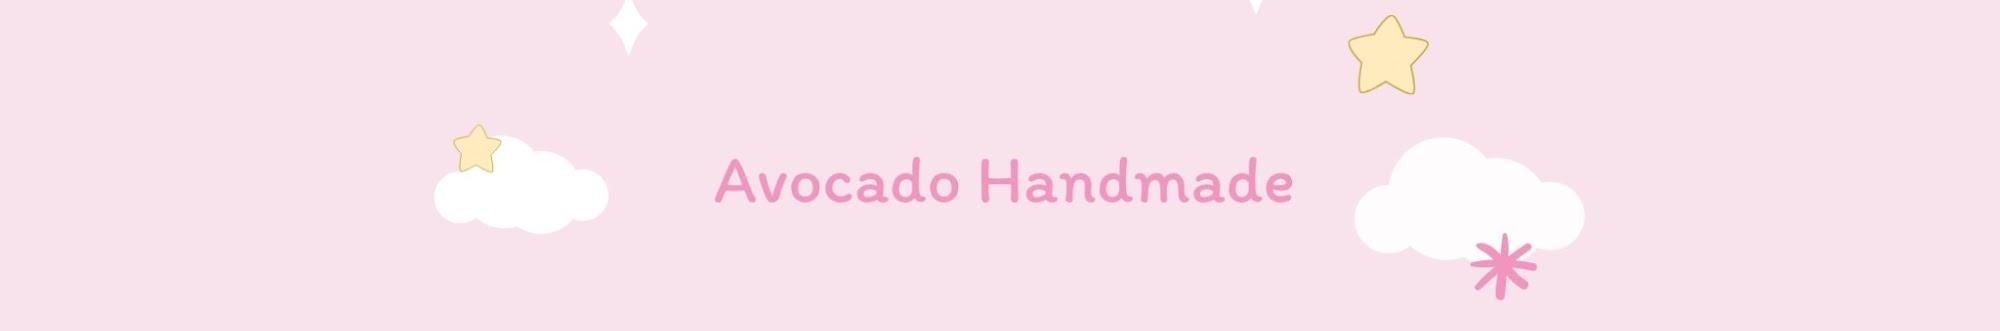 Avocado Handmade